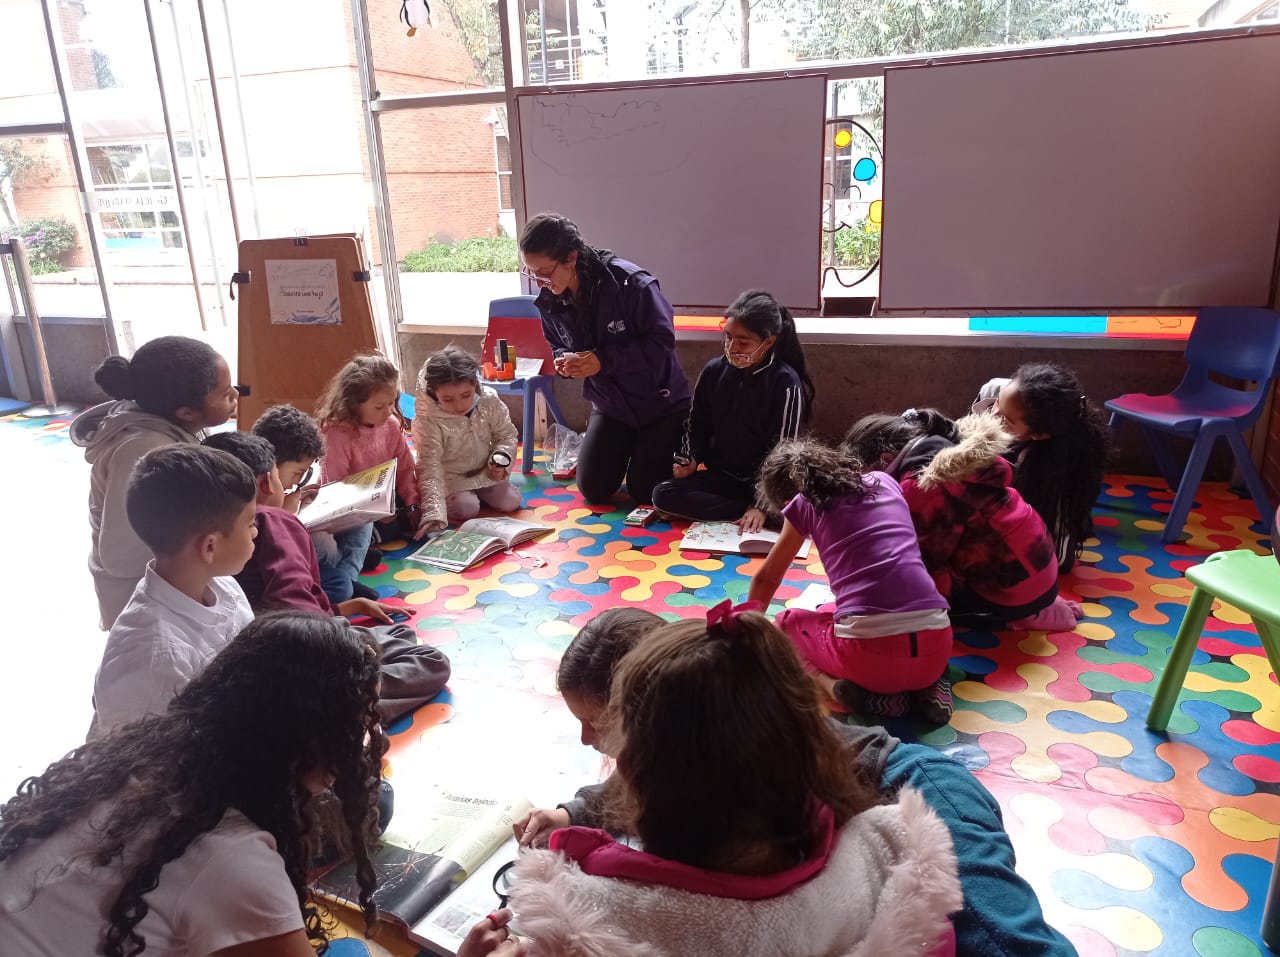  espacio dirigido a niños y niñas de 5 a 12 años para la creación, exploración, el juego y el arte a través de la lectura sensorial, audiovisual y escrita